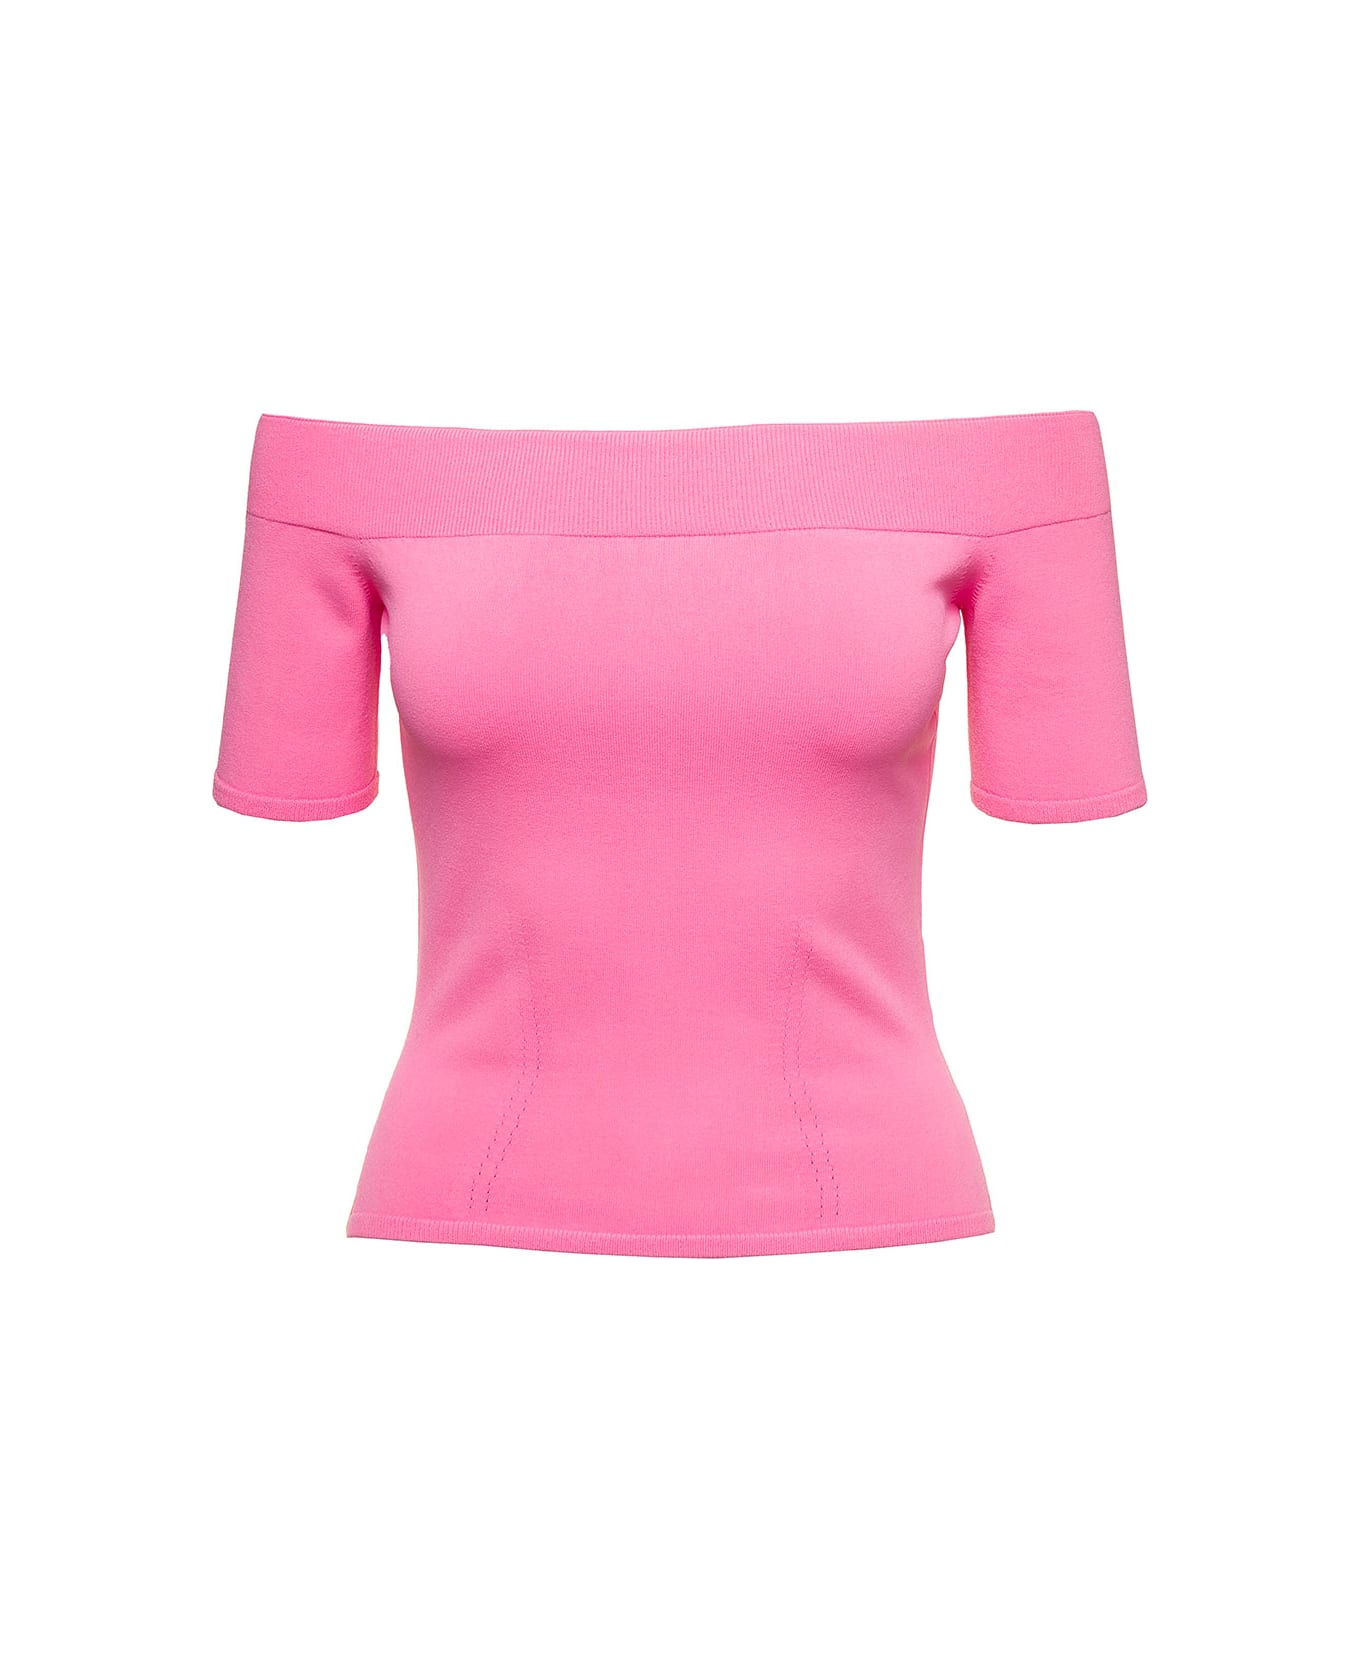 Alexander McQueen Pink Off-the-shoulders Top In Viscose Blend Woman - Pink